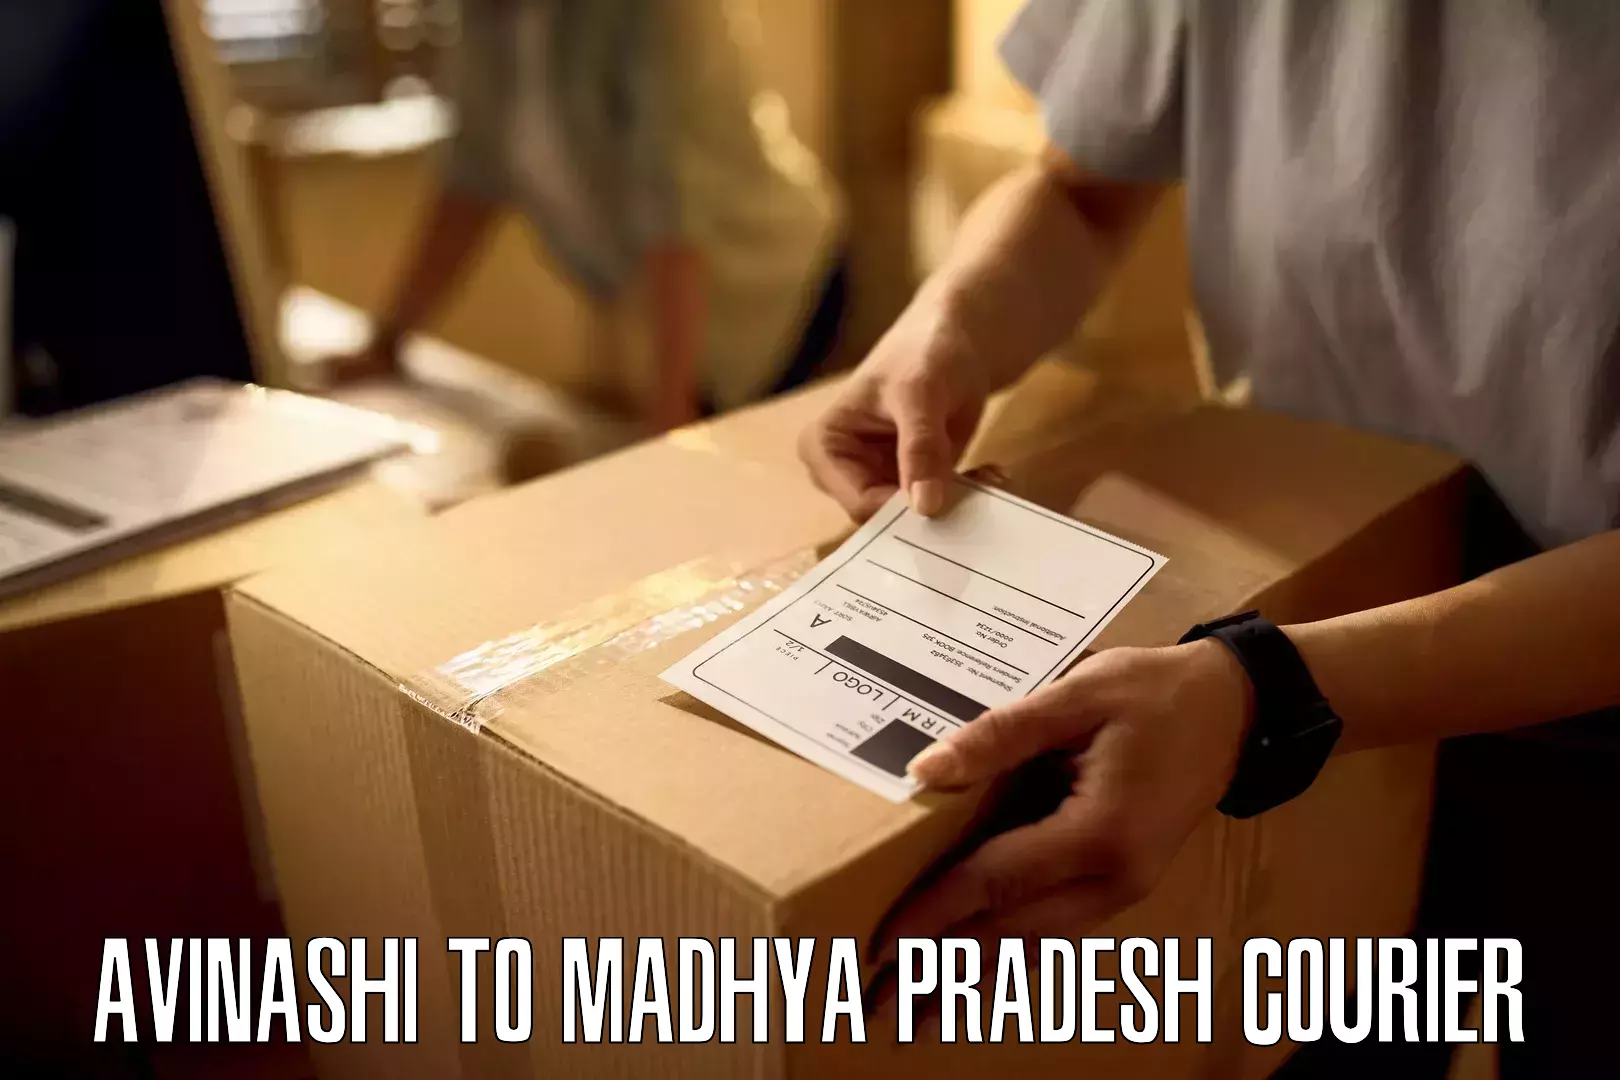 Speedy delivery service Avinashi to Madhya Pradesh